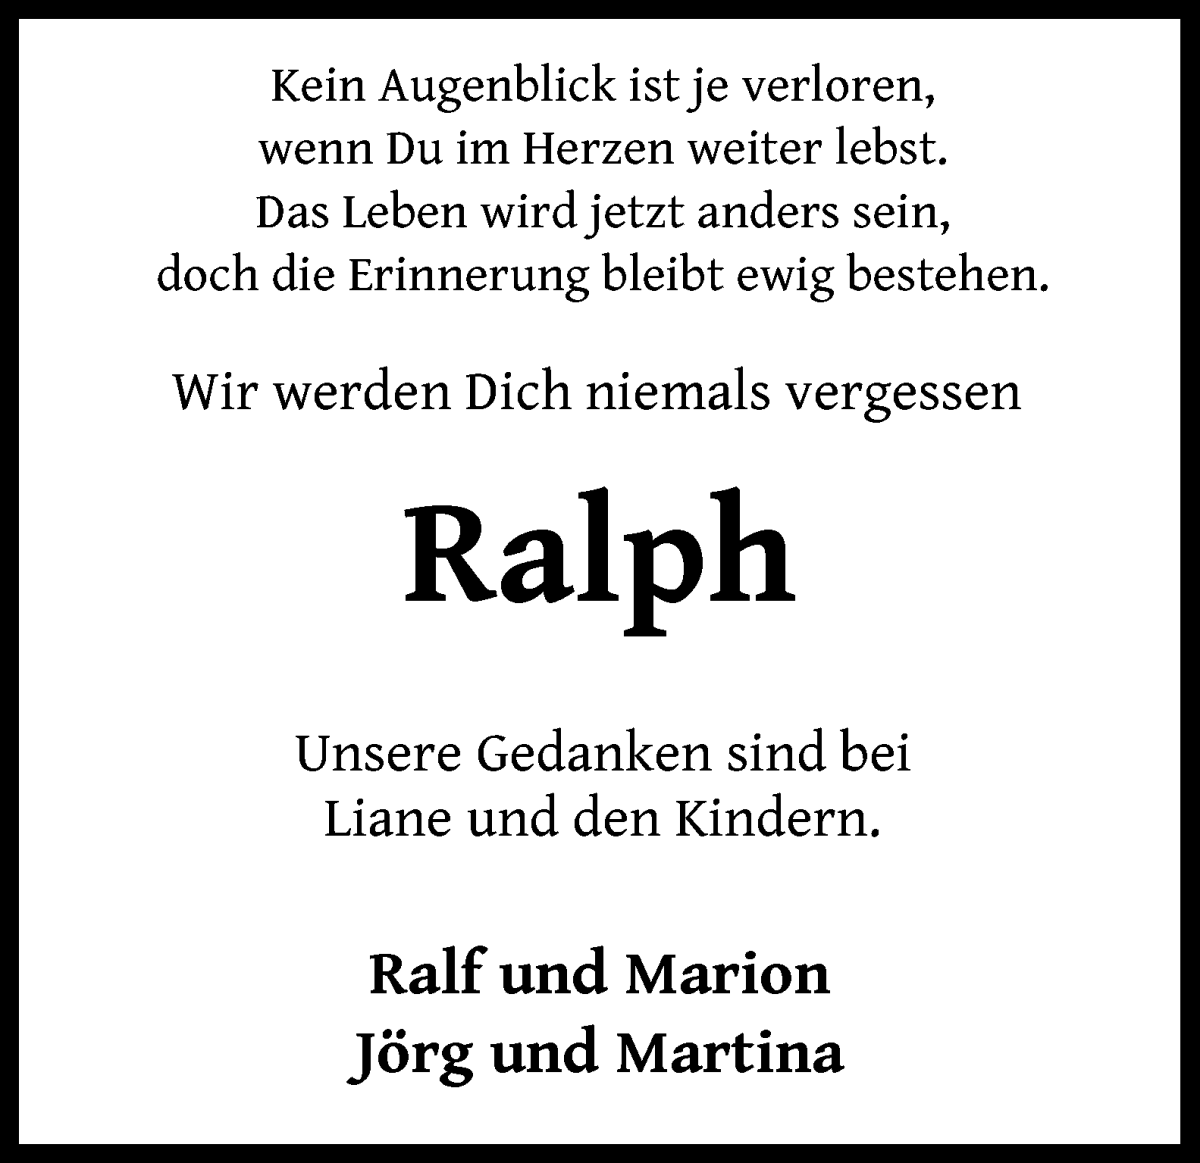  Traueranzeige für Ralph Dröge vom 08.04.2023 aus WESER-KURIER